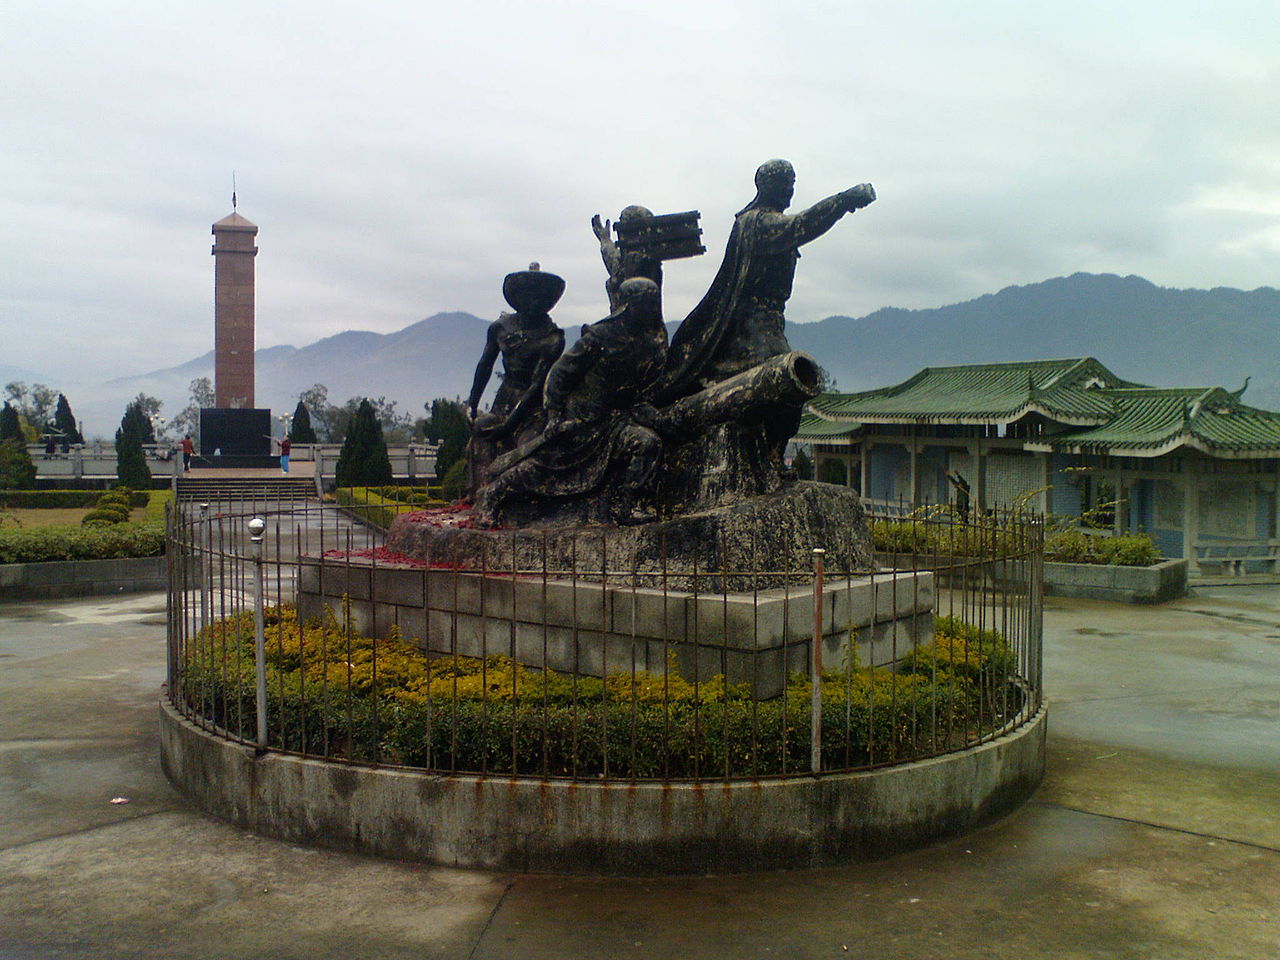 Ιστορικό μνημείο της εξέγερσης των Ταϊπίνγκ στην πόλη Μενγκσάν της επαρχίας Γκουανγκσί, η οποία ήταν η αρχική έδρα των επαναστατών Ταϊπίνγκ